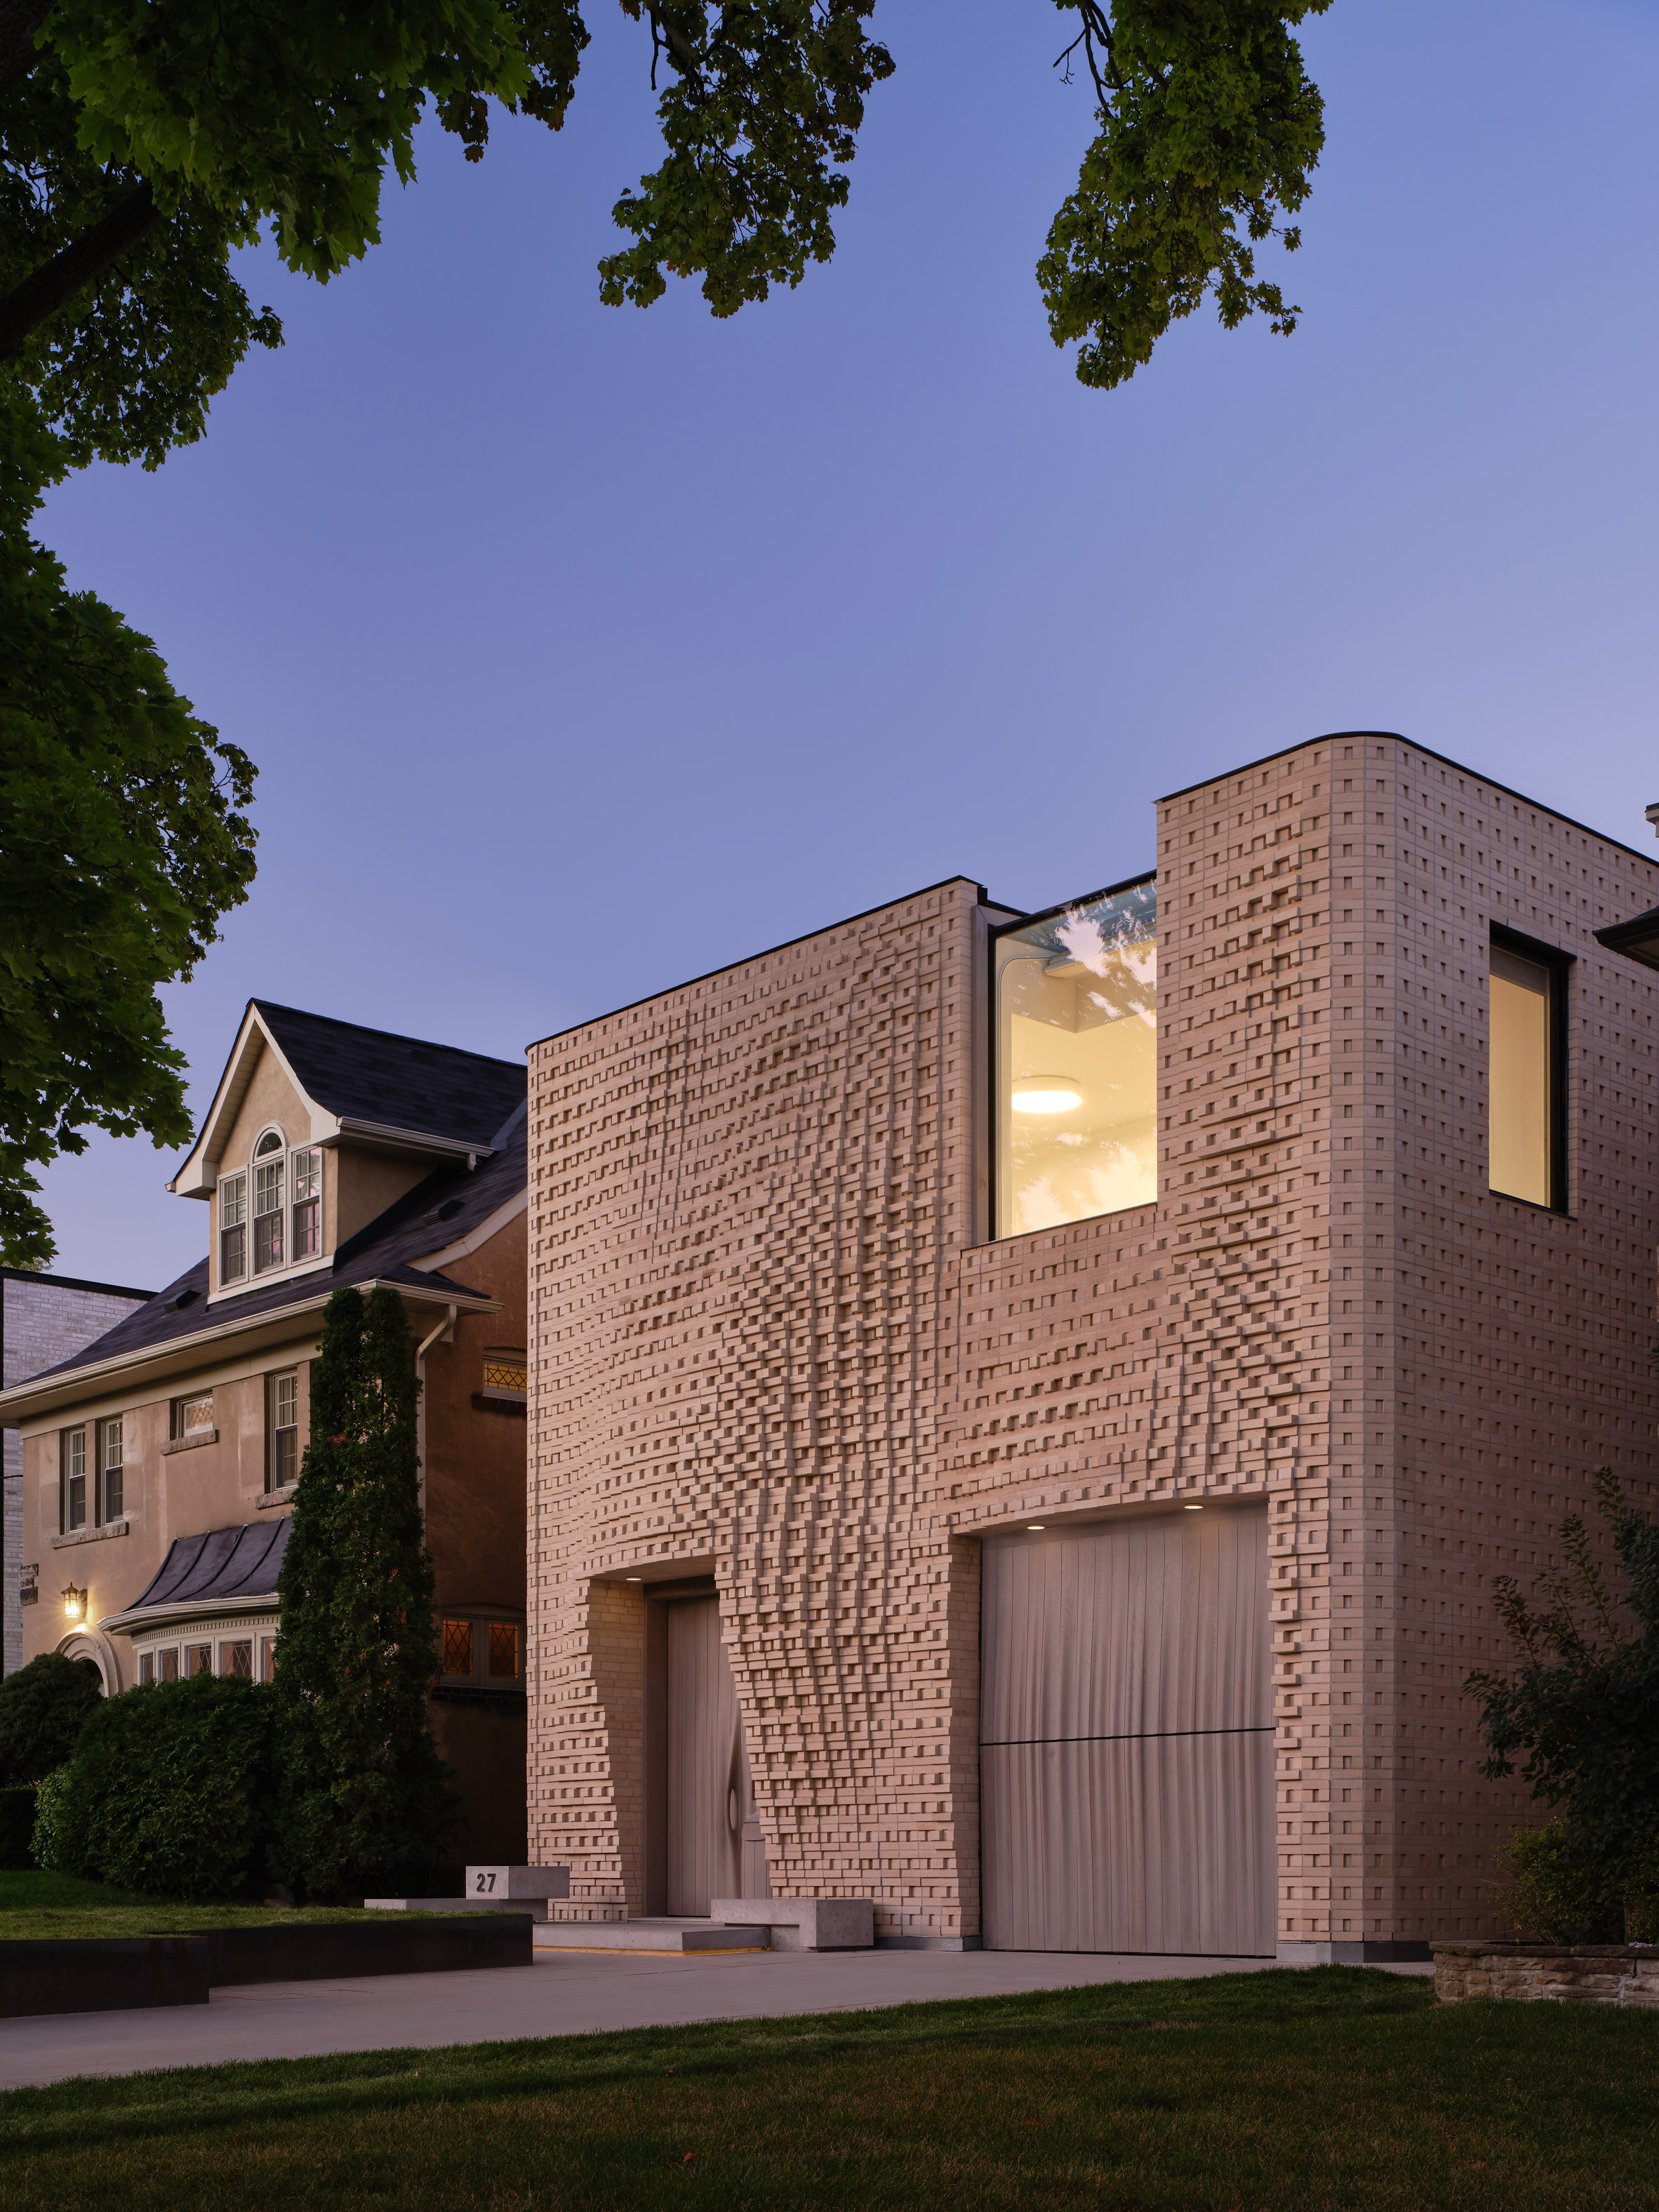 游击队为多伦多的房子创造像素化的砖立面|ART-Arrakis | 建筑室内设计的创新与灵感